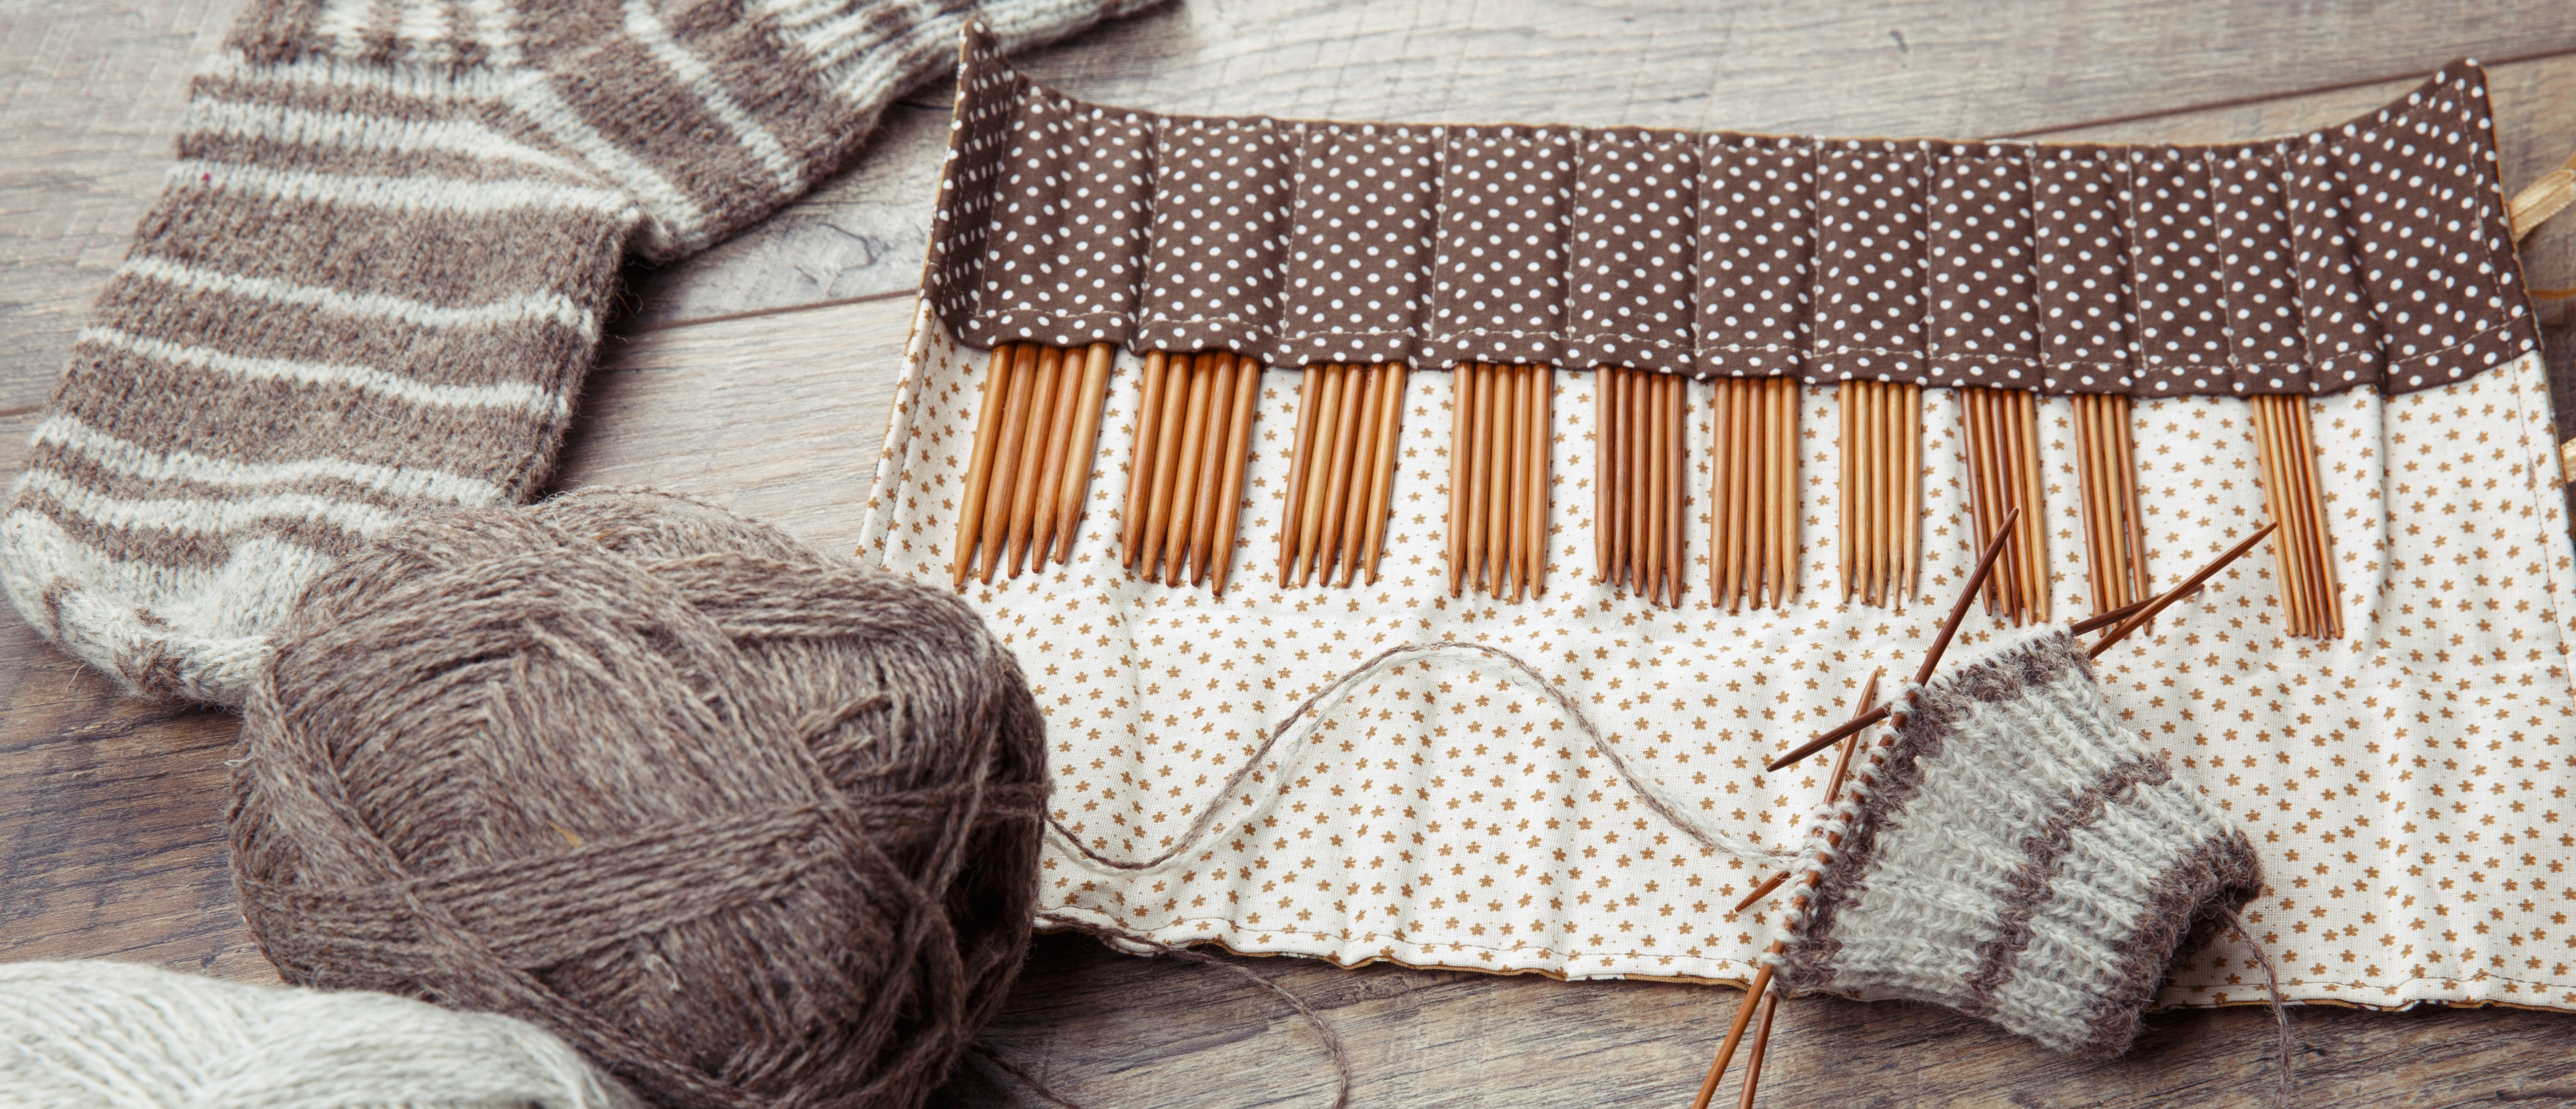 Brown yarn and knitting needles knitting a sock